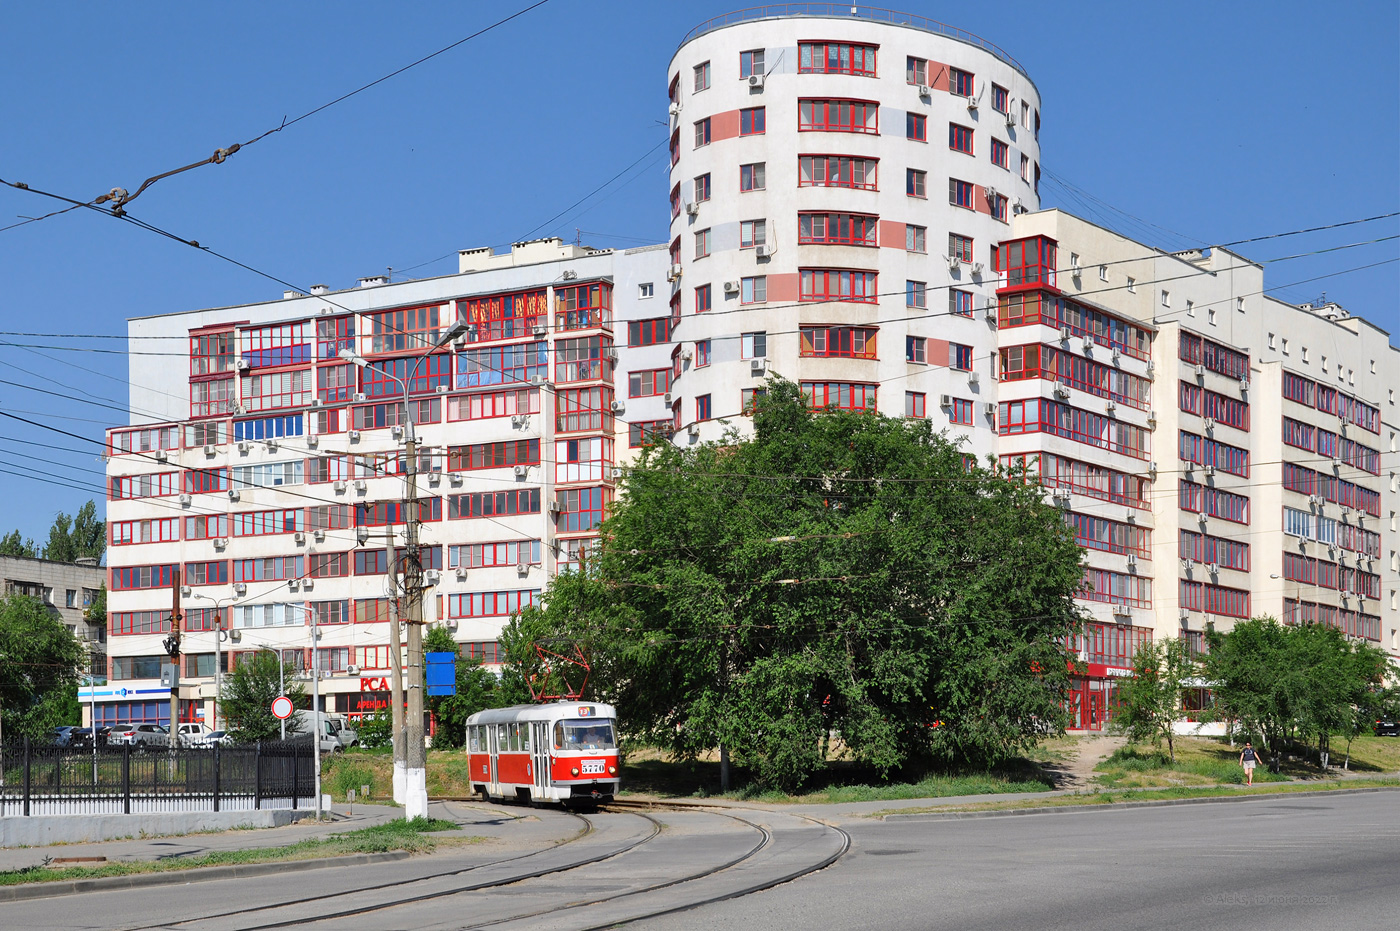 Волгоград, Tatra T3SU № 5770; Волгоград — Трамвайные линии: [5] Пятое депо — Линия 13-го трамвая